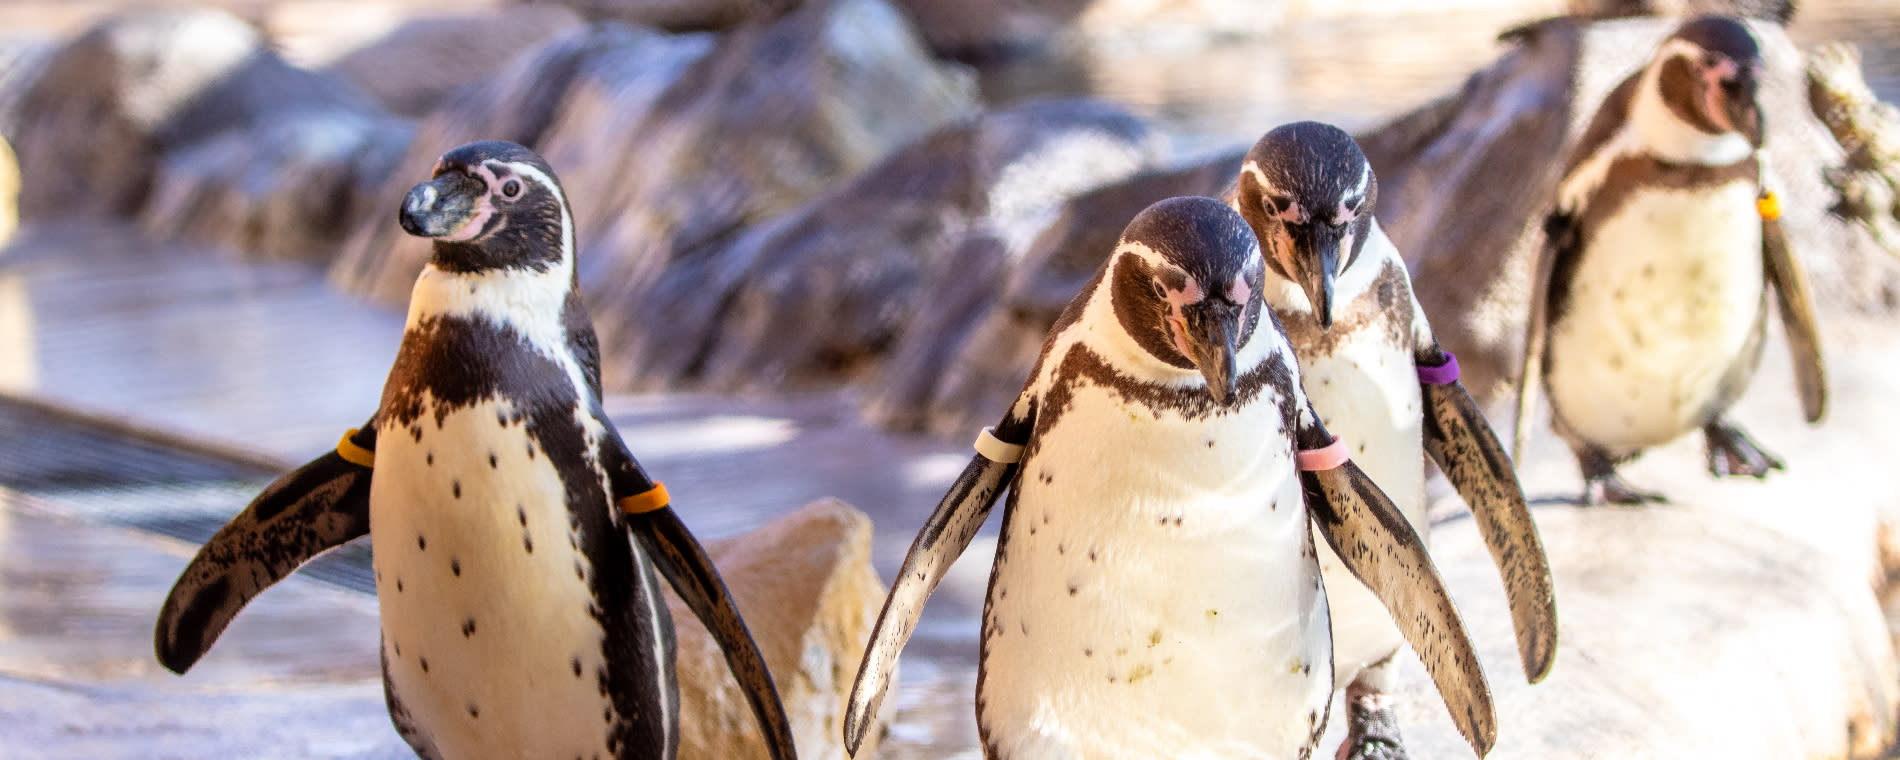 Sedgwick County Zoo Humboldt Penguin